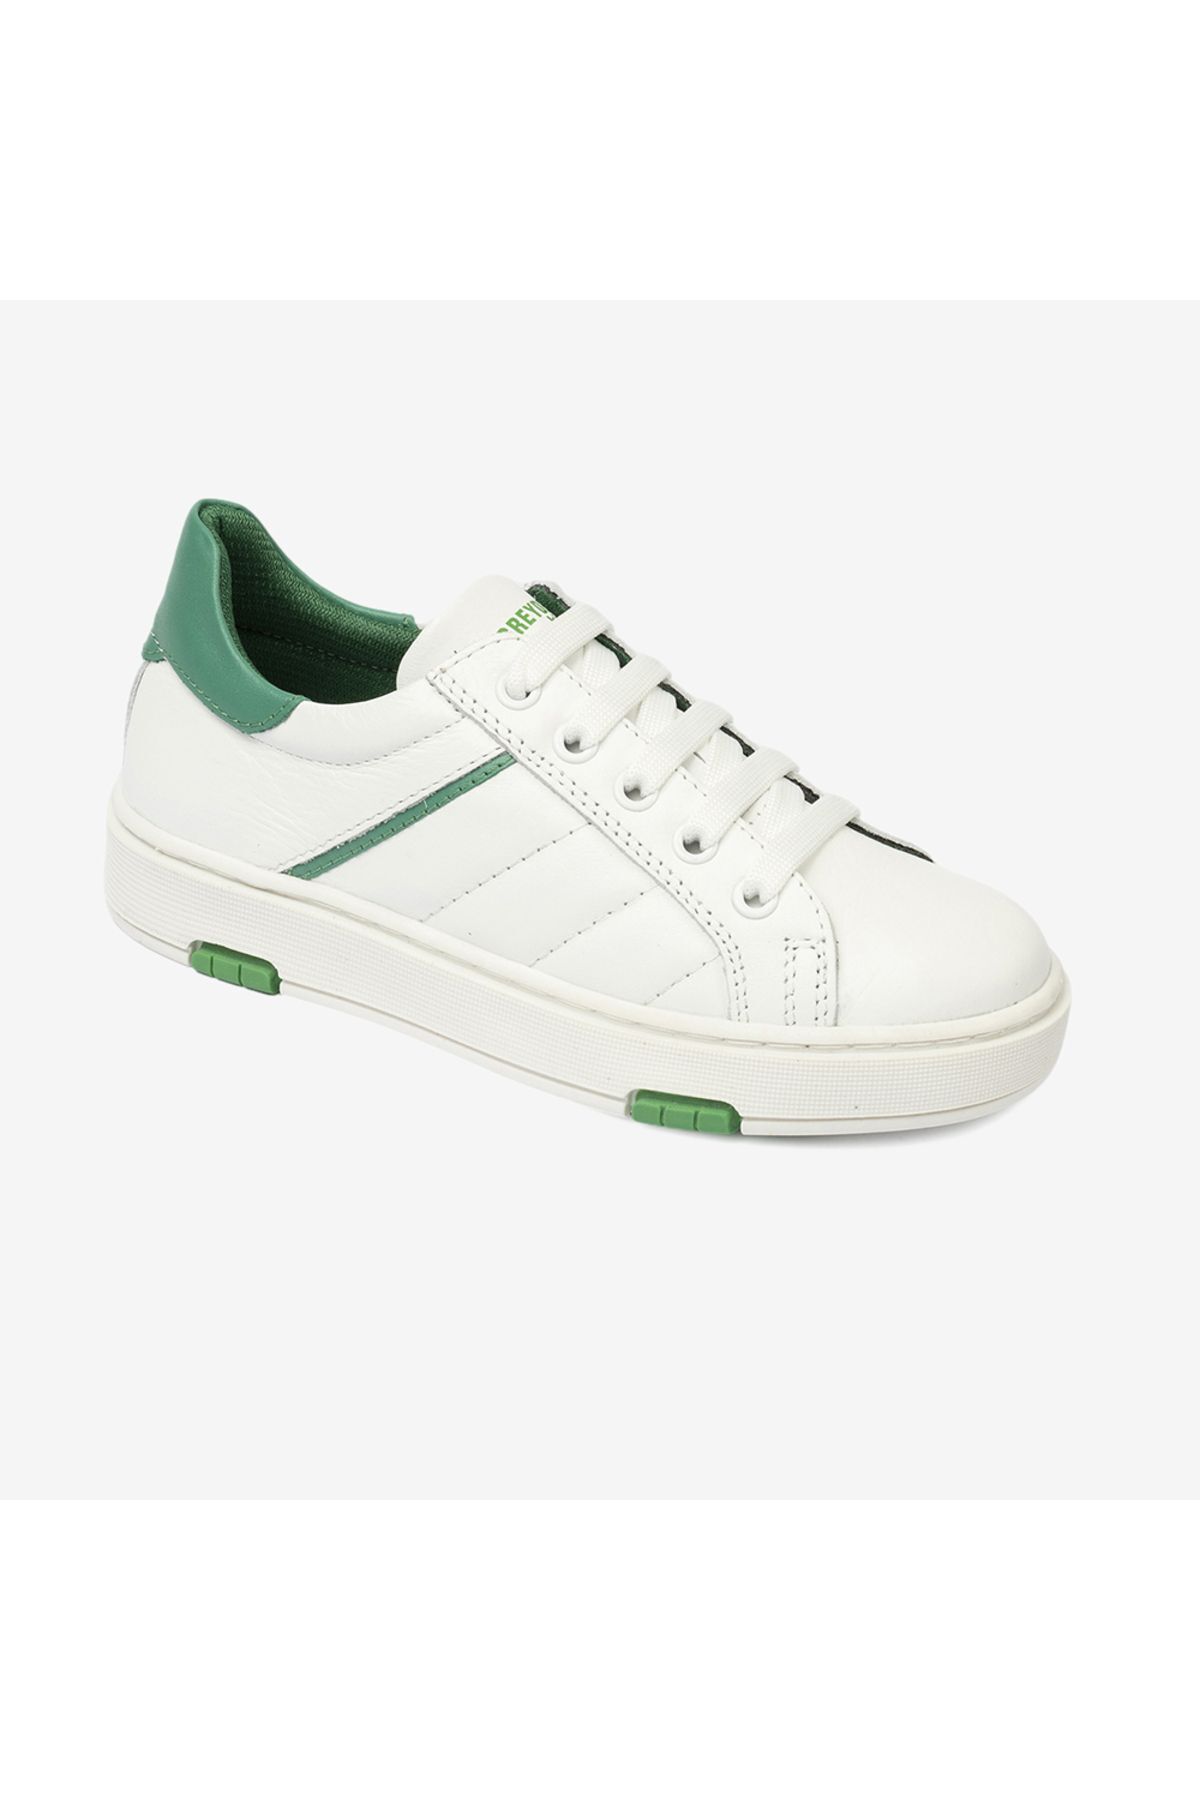 Greyder Erkek Çocuk Beyaz Yeşil Hakiki Deri Sneaker Ayakkabı 4y5na59501